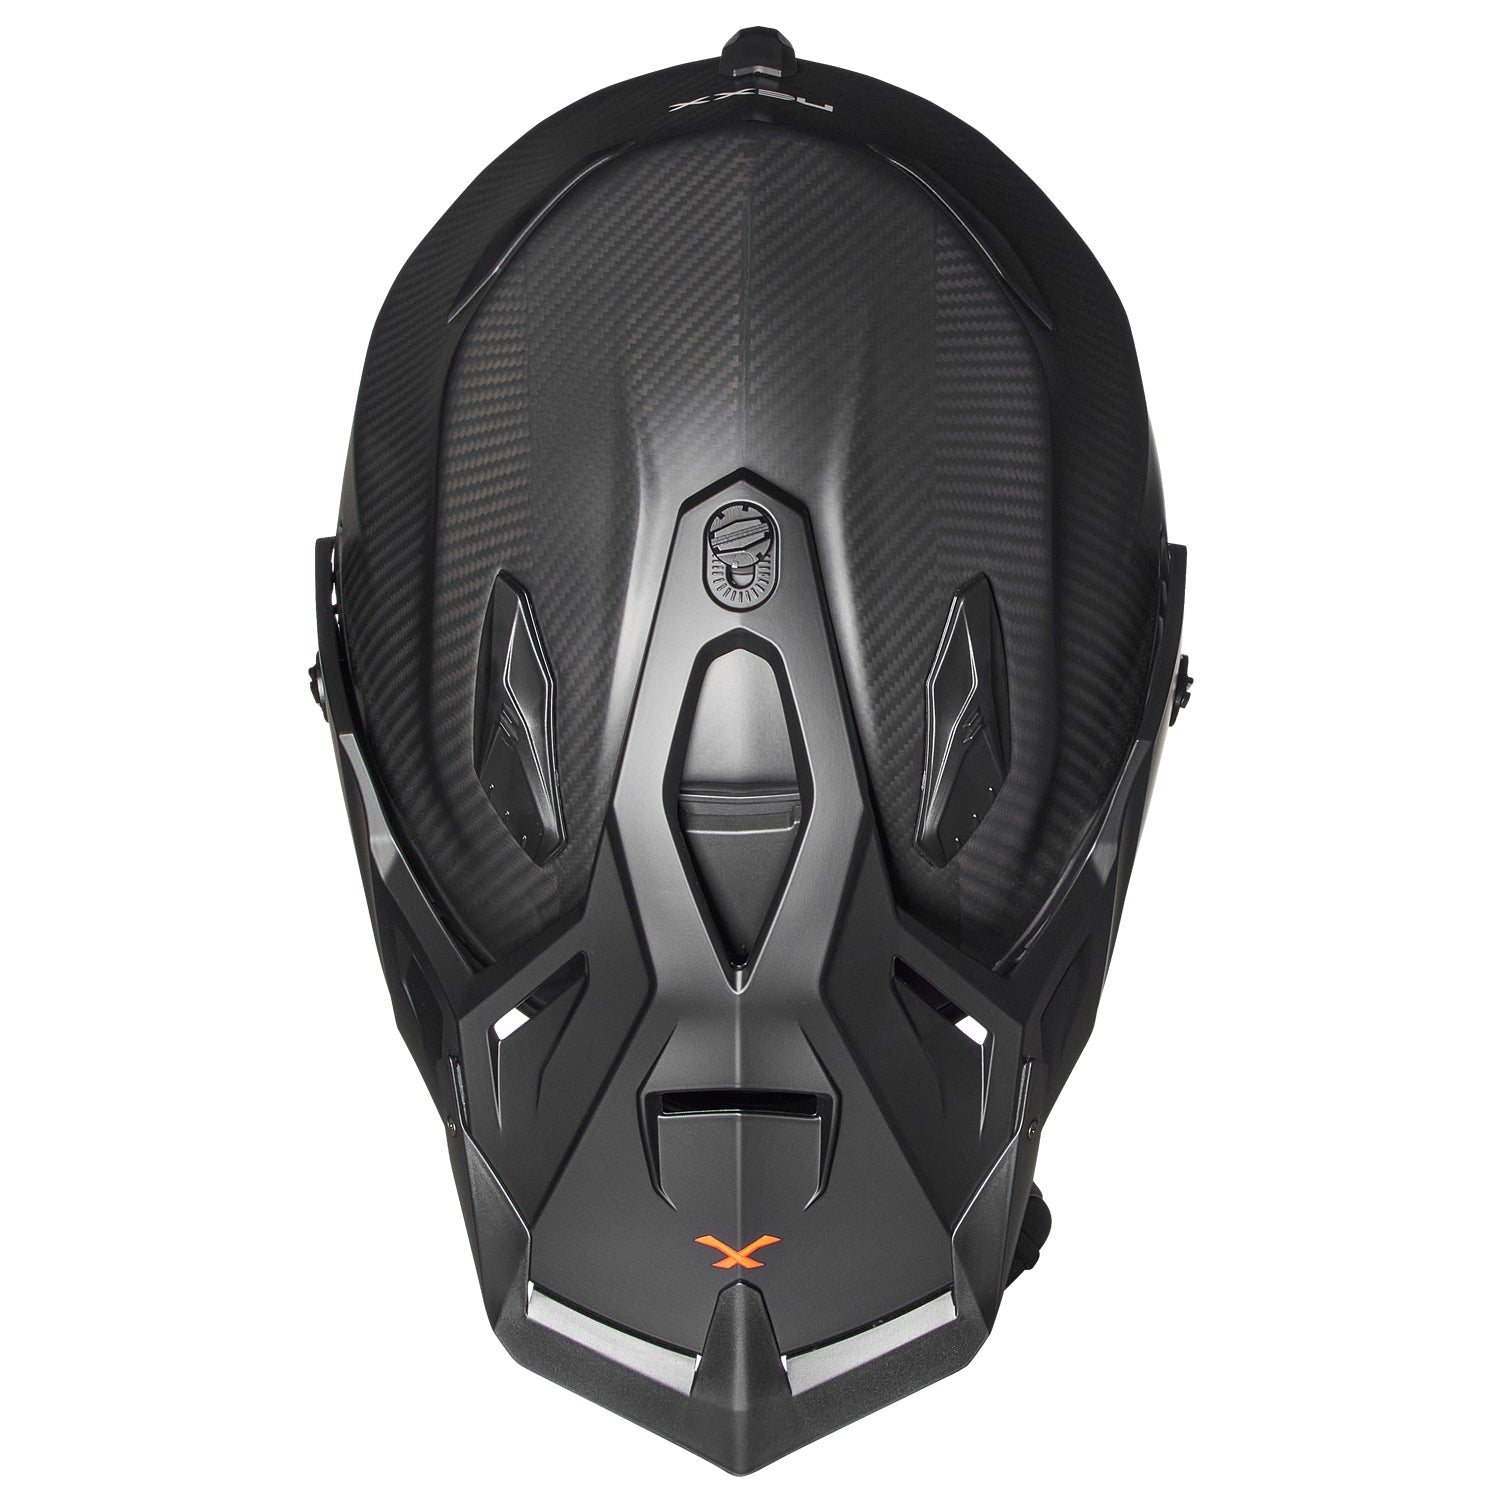 NEXX X.WRL Zero Pro Matte Carbon Helmet